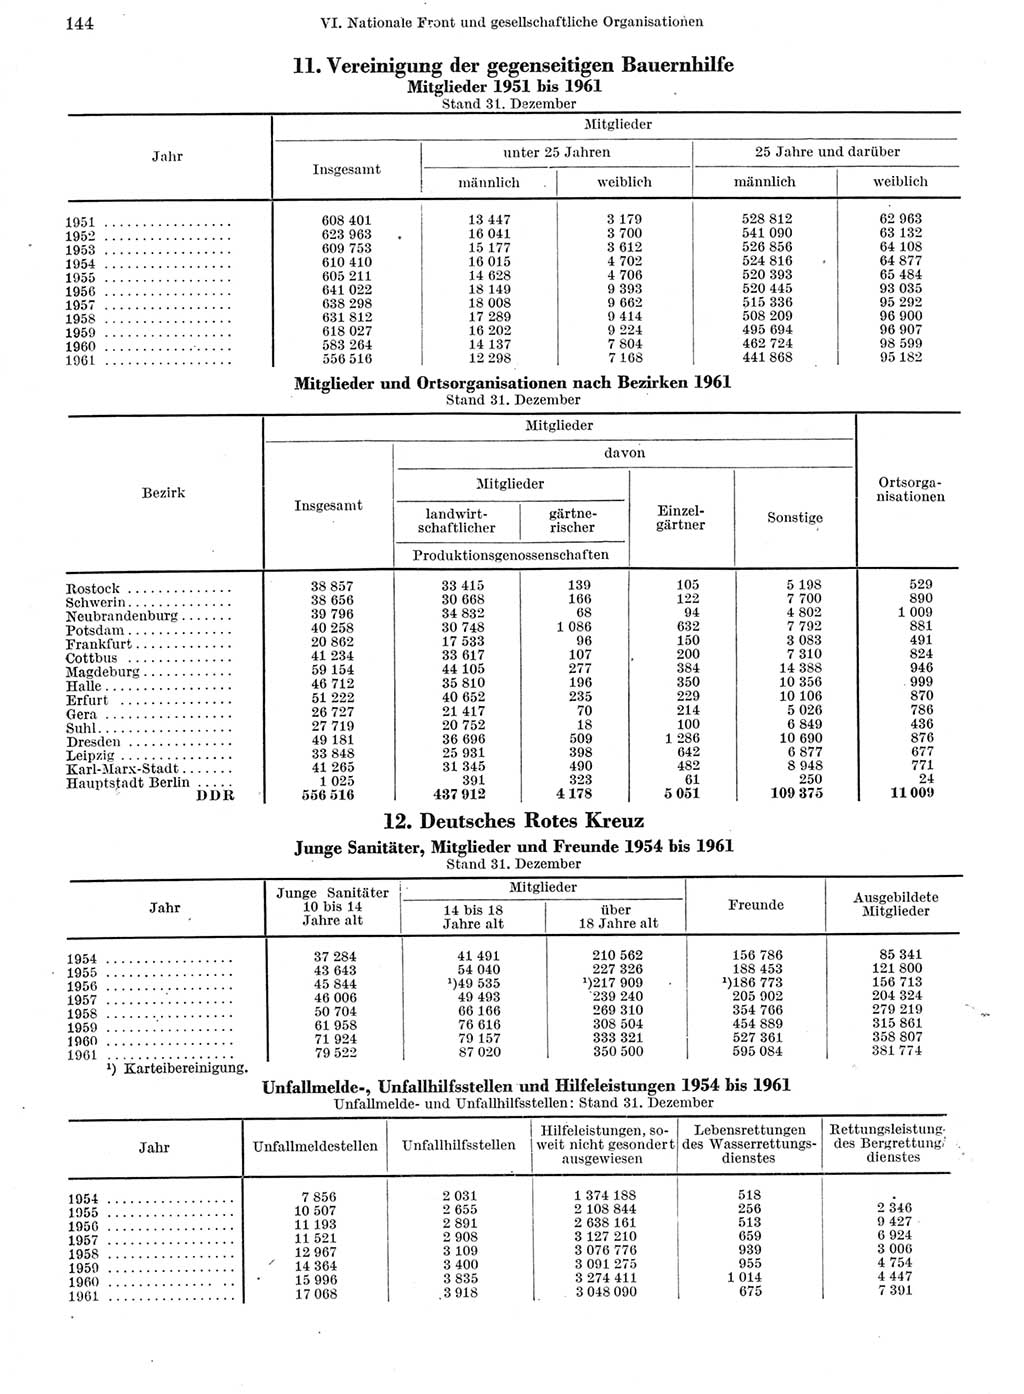 Statistisches Jahrbuch der Deutschen Demokratischen Republik (DDR) 1962, Seite 144 (Stat. Jb. DDR 1962, S. 144)